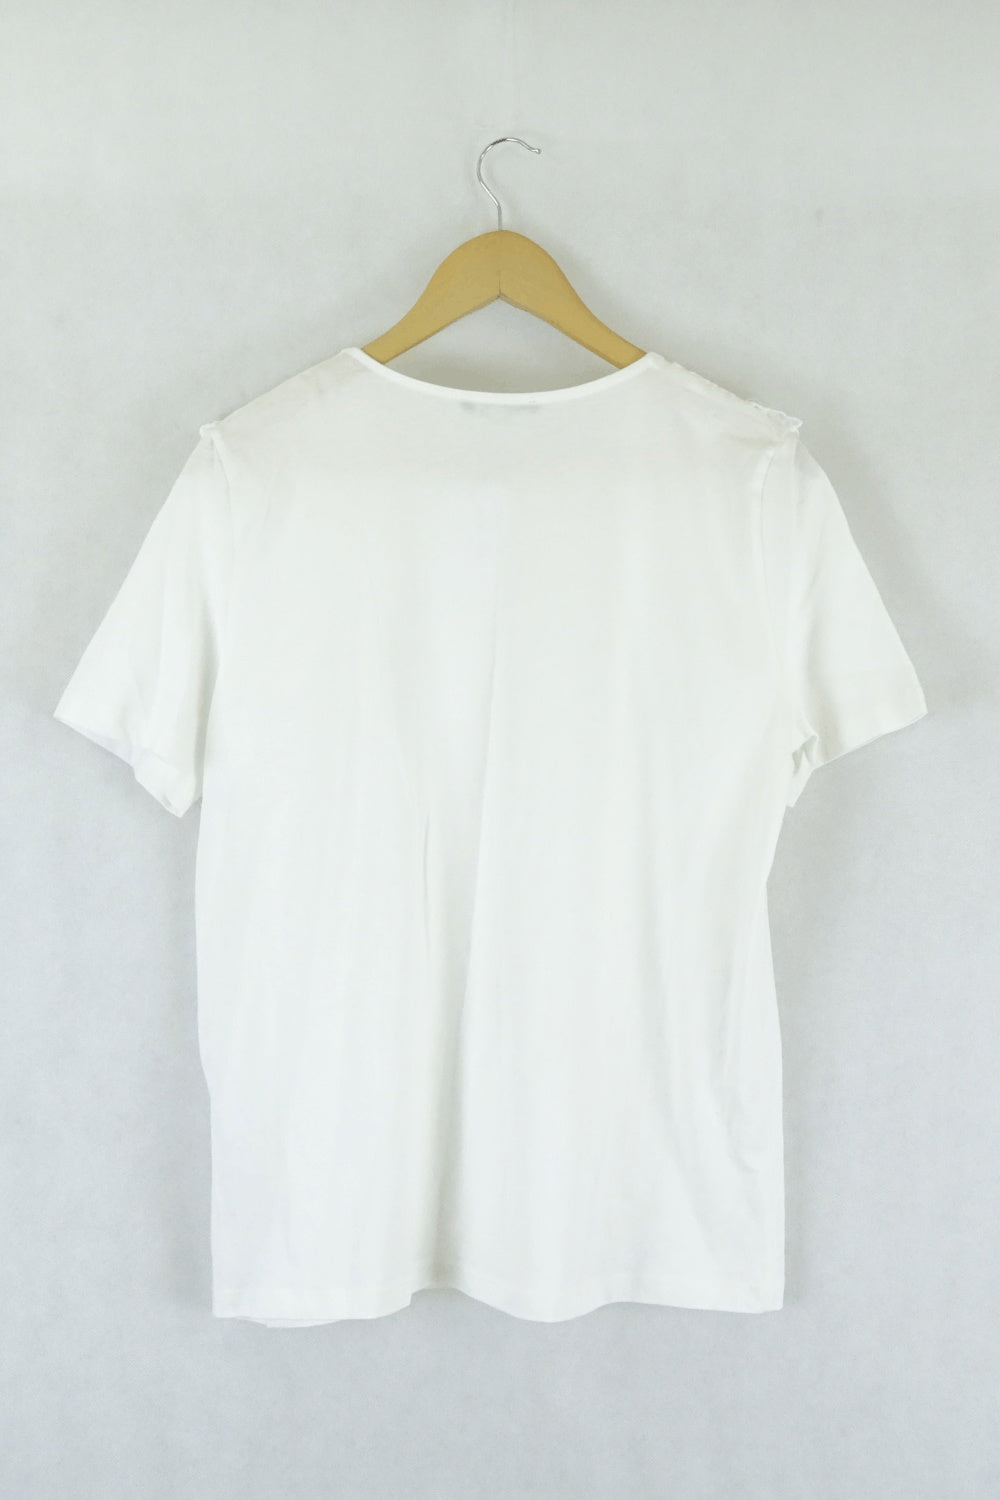 Zara White T-Shirt L